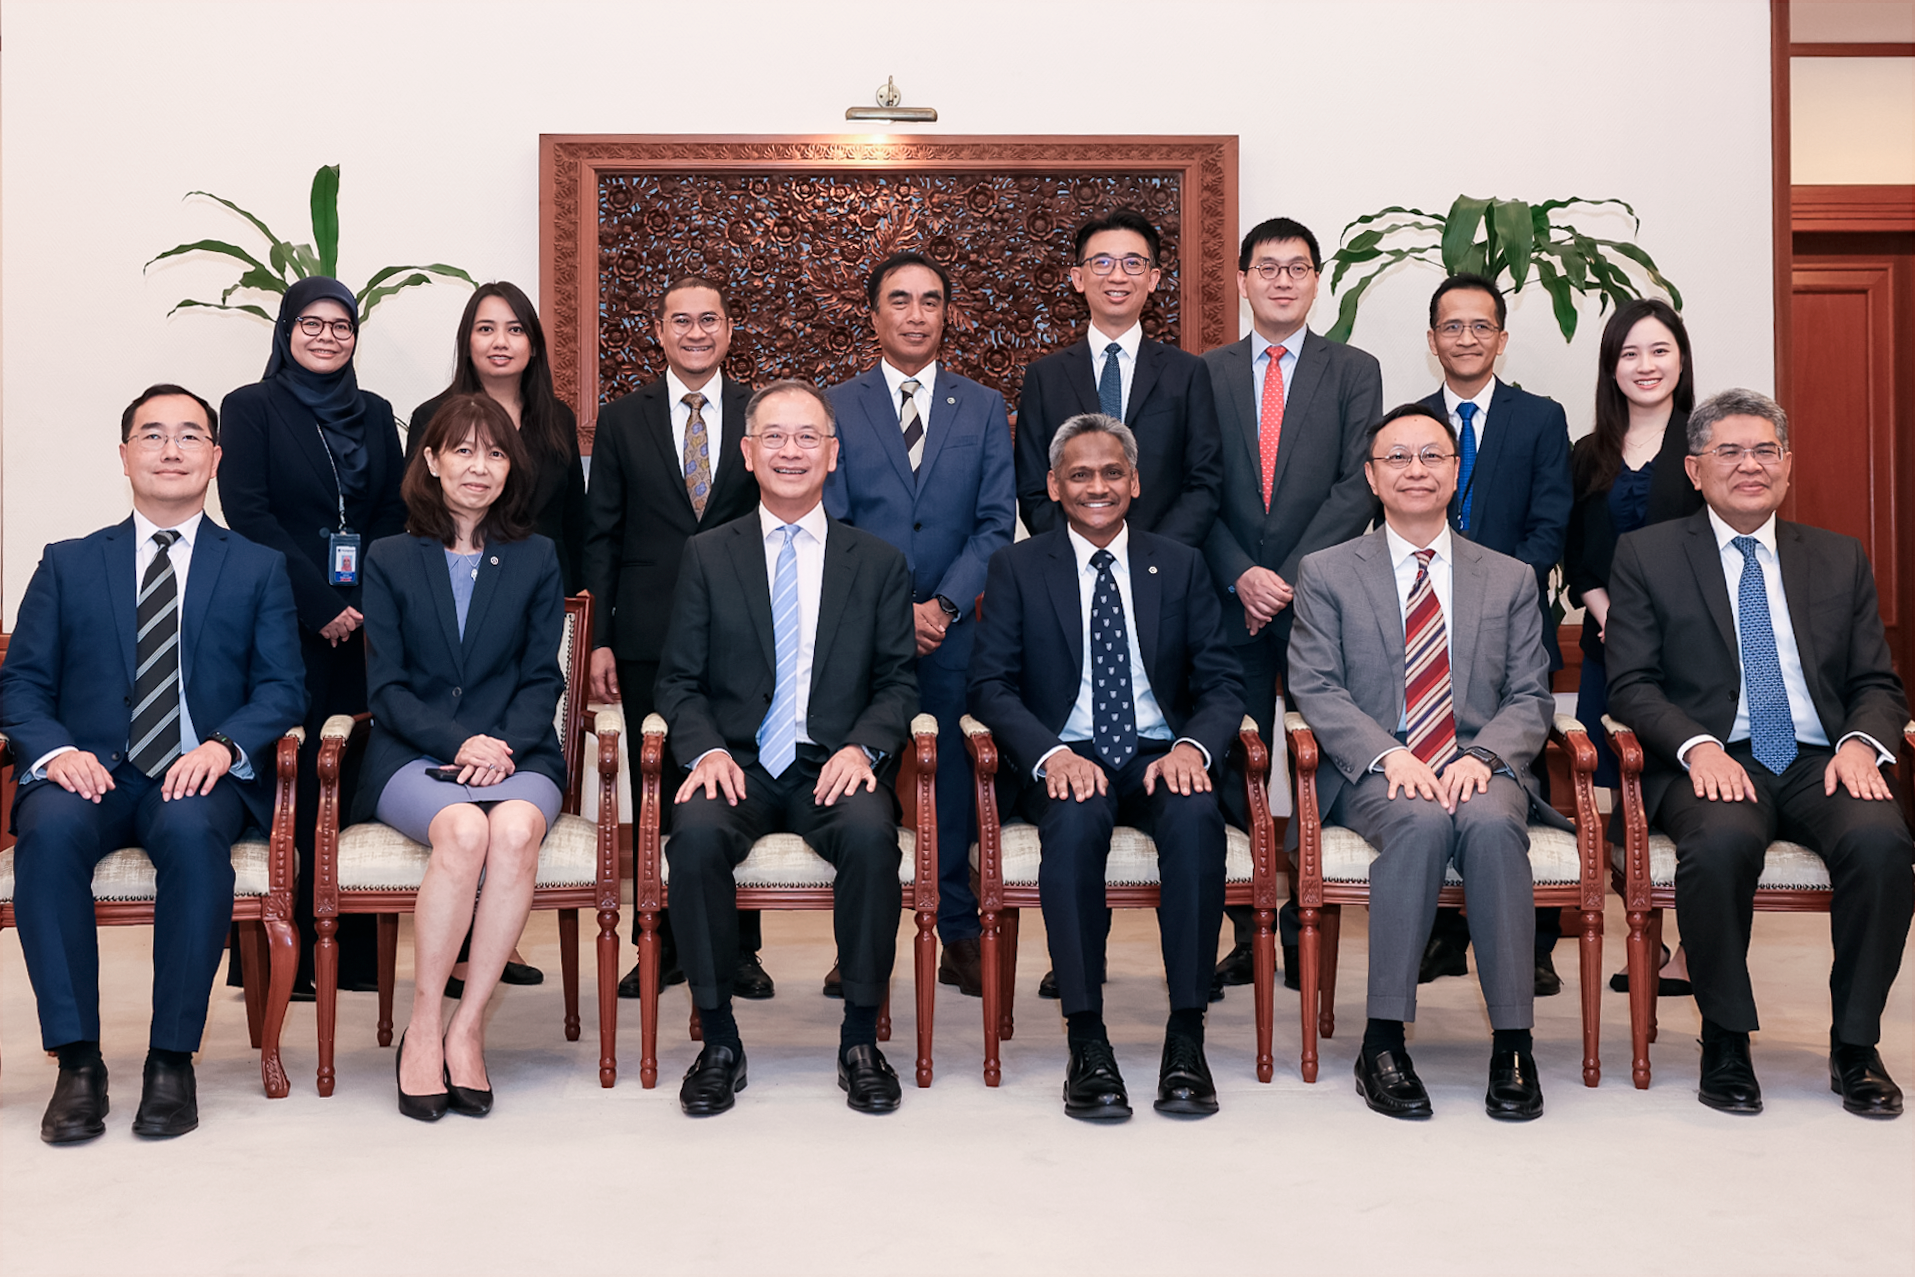 香港金融管理局總裁余偉文（前排左三）與馬來西亞中央銀行行長Abdul Rasheed Ghaffour拿督（前排右三）和雙方代表，於五月二十四日舉行雙邊會議，討論加強兩地金融業合作。